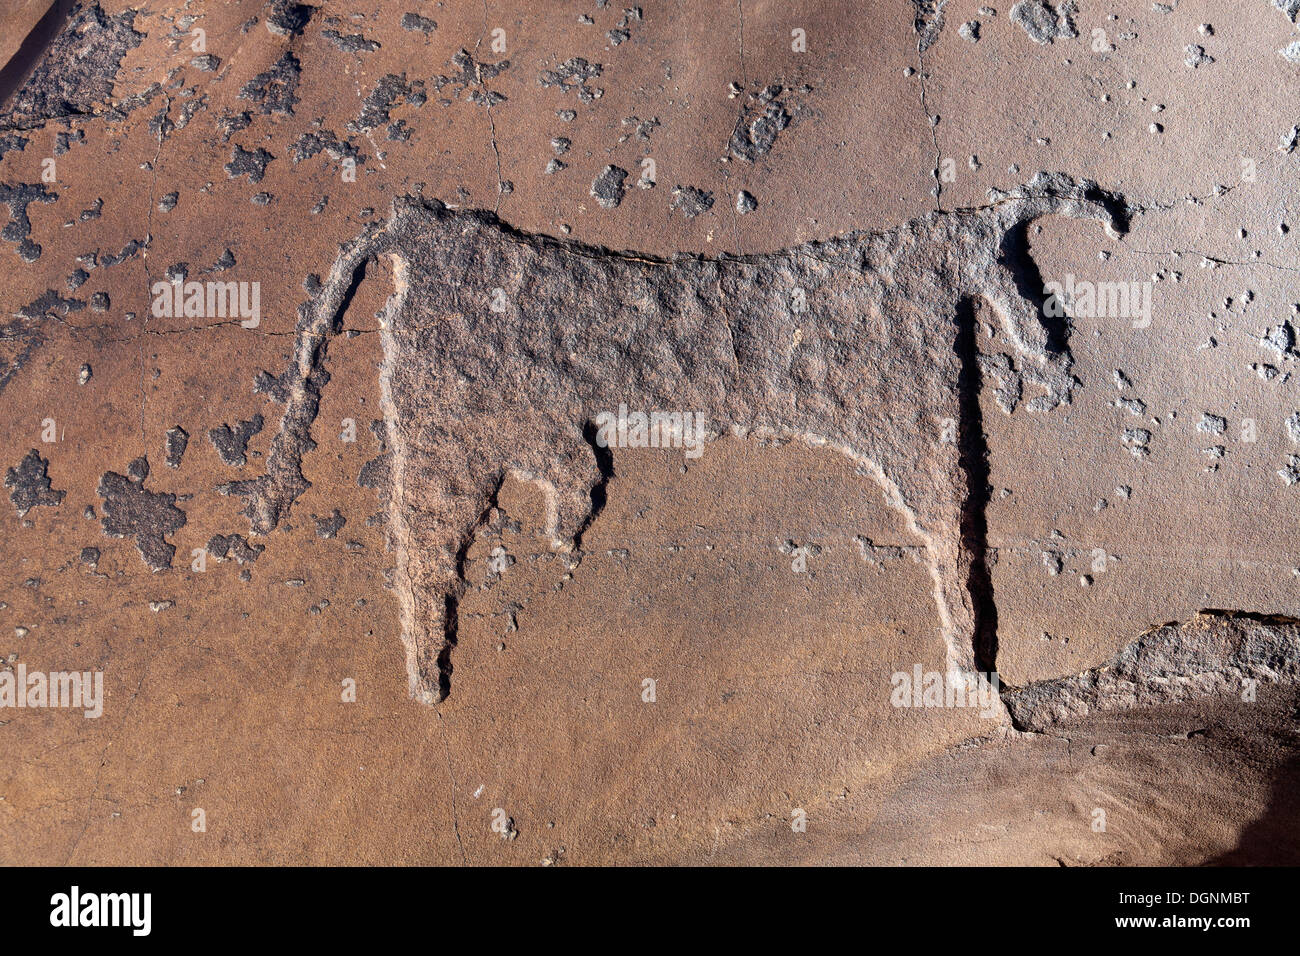 Schönes Bild von Bull im Bereich der prähistorischen Felszeichnungen in Oukaimeden Skigebiet im hohen Atlas-Gebirge in Marokko Stockfoto